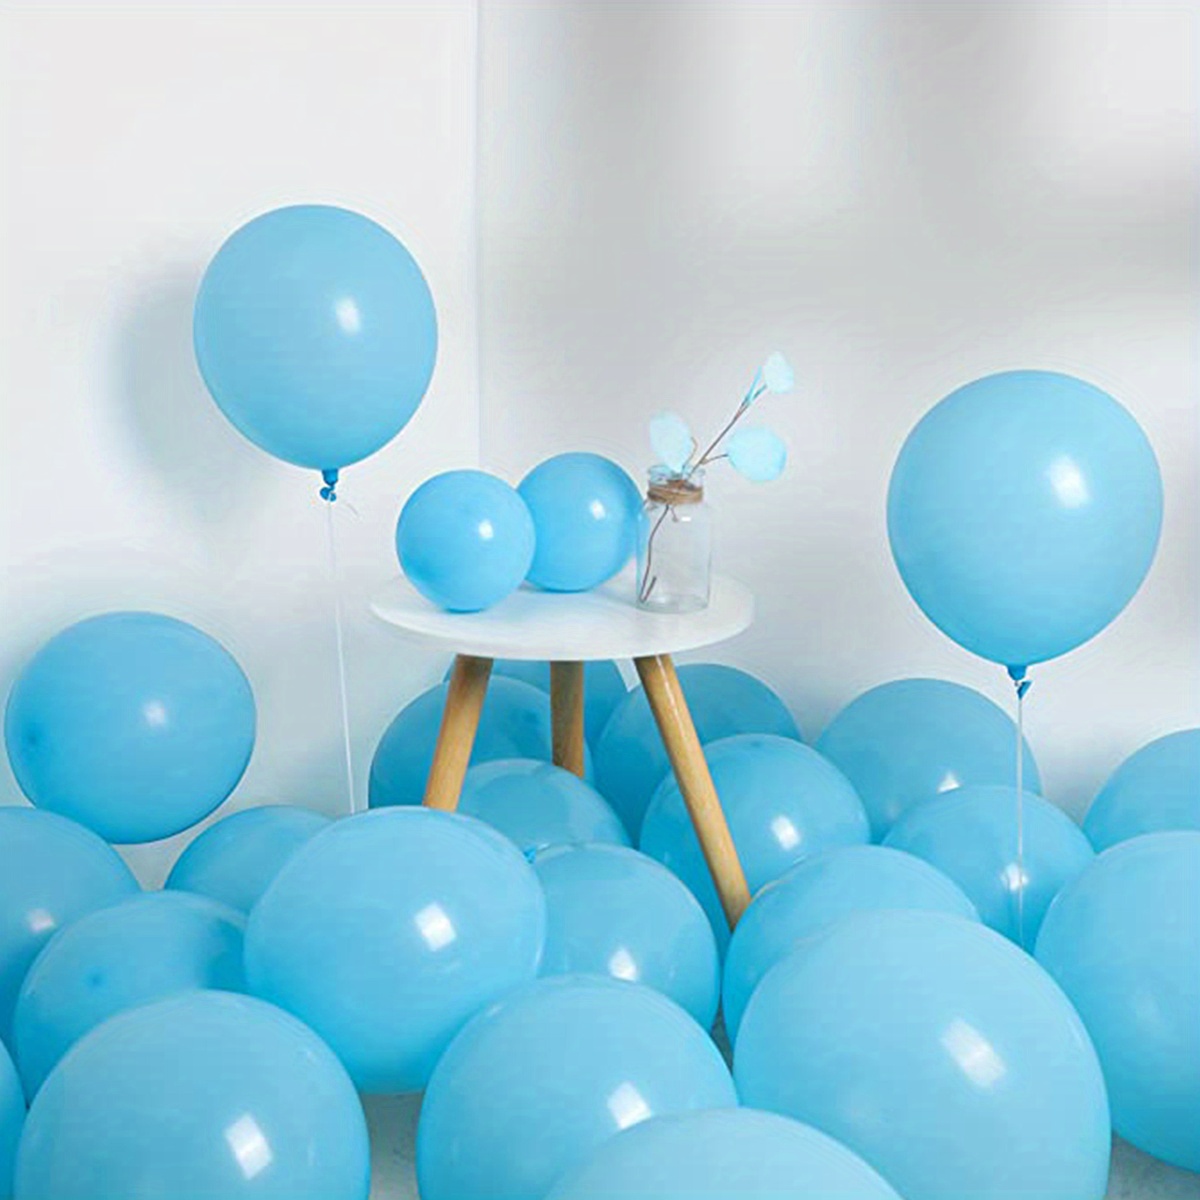 Prextex 600 globos de fiesta, 12 pulgadas, 10 globos de colores surtidos  arco iris, paquete a granel de globos de látex fuertes para decoraciones de